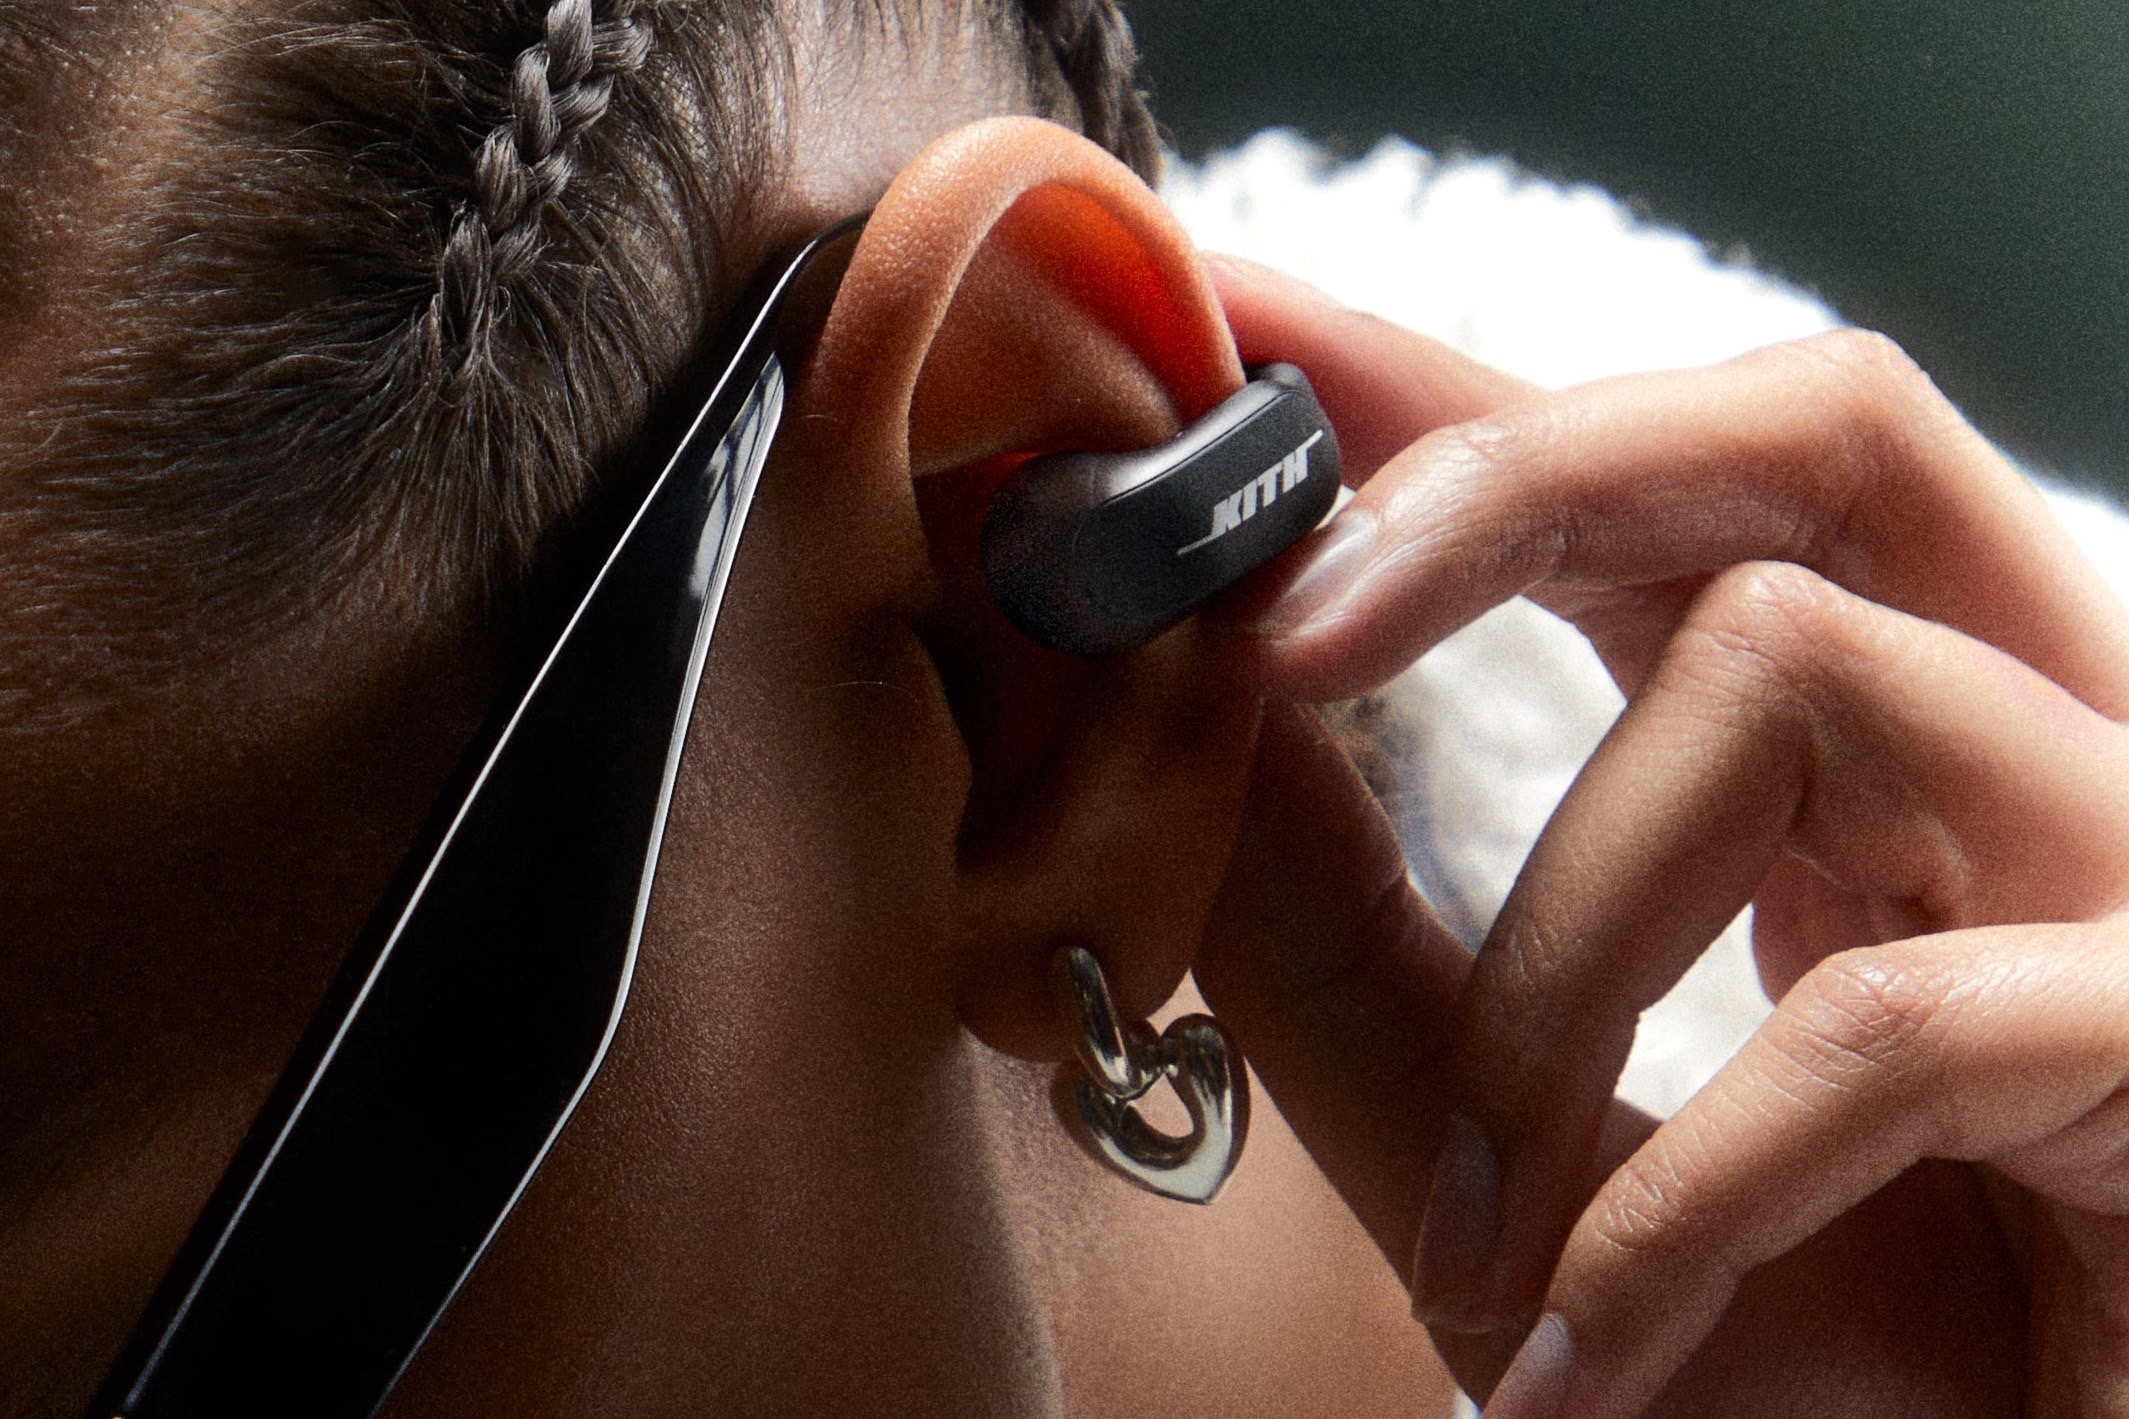 JBL brings open or closed listening flexibility to true wireless earphones